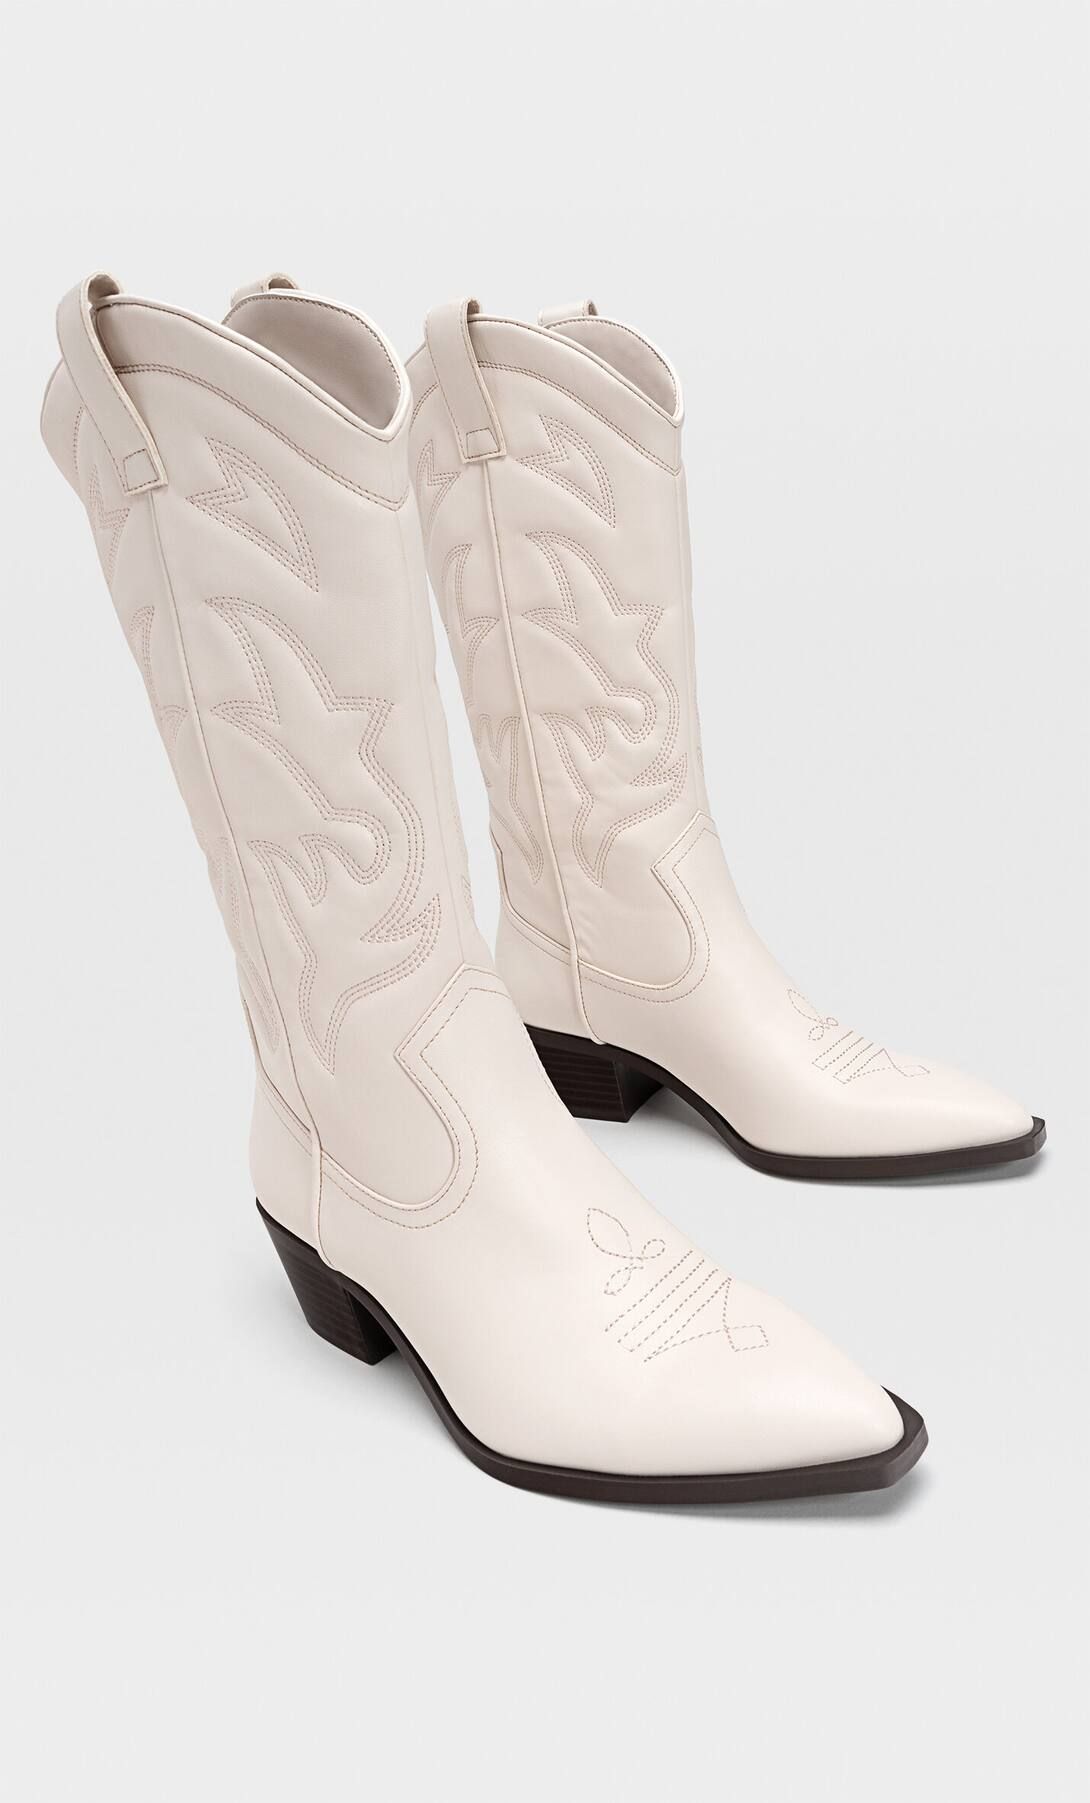 Heeled cowboy boots - Women's fashion | Stradivarius United Kingdom | Stradivarius (UK)